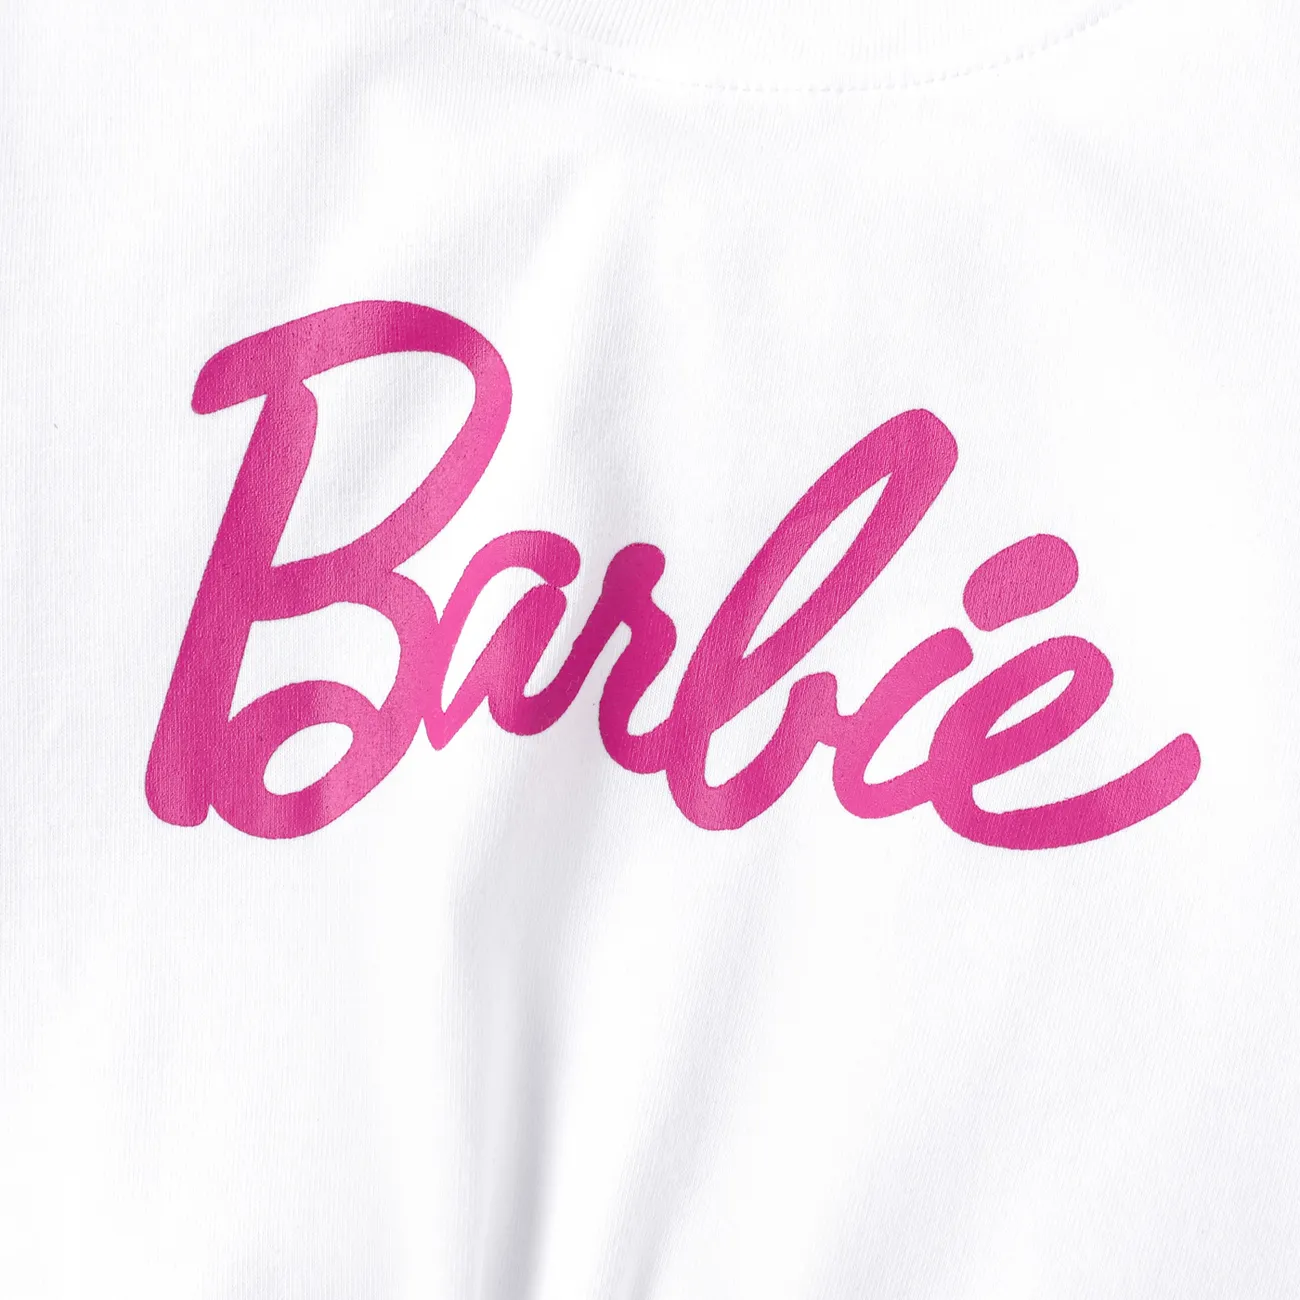 Barbie 2 unidades Criança Menina Saia de várias camadas Elegante Fato saia e casaco rosa branco big image 1